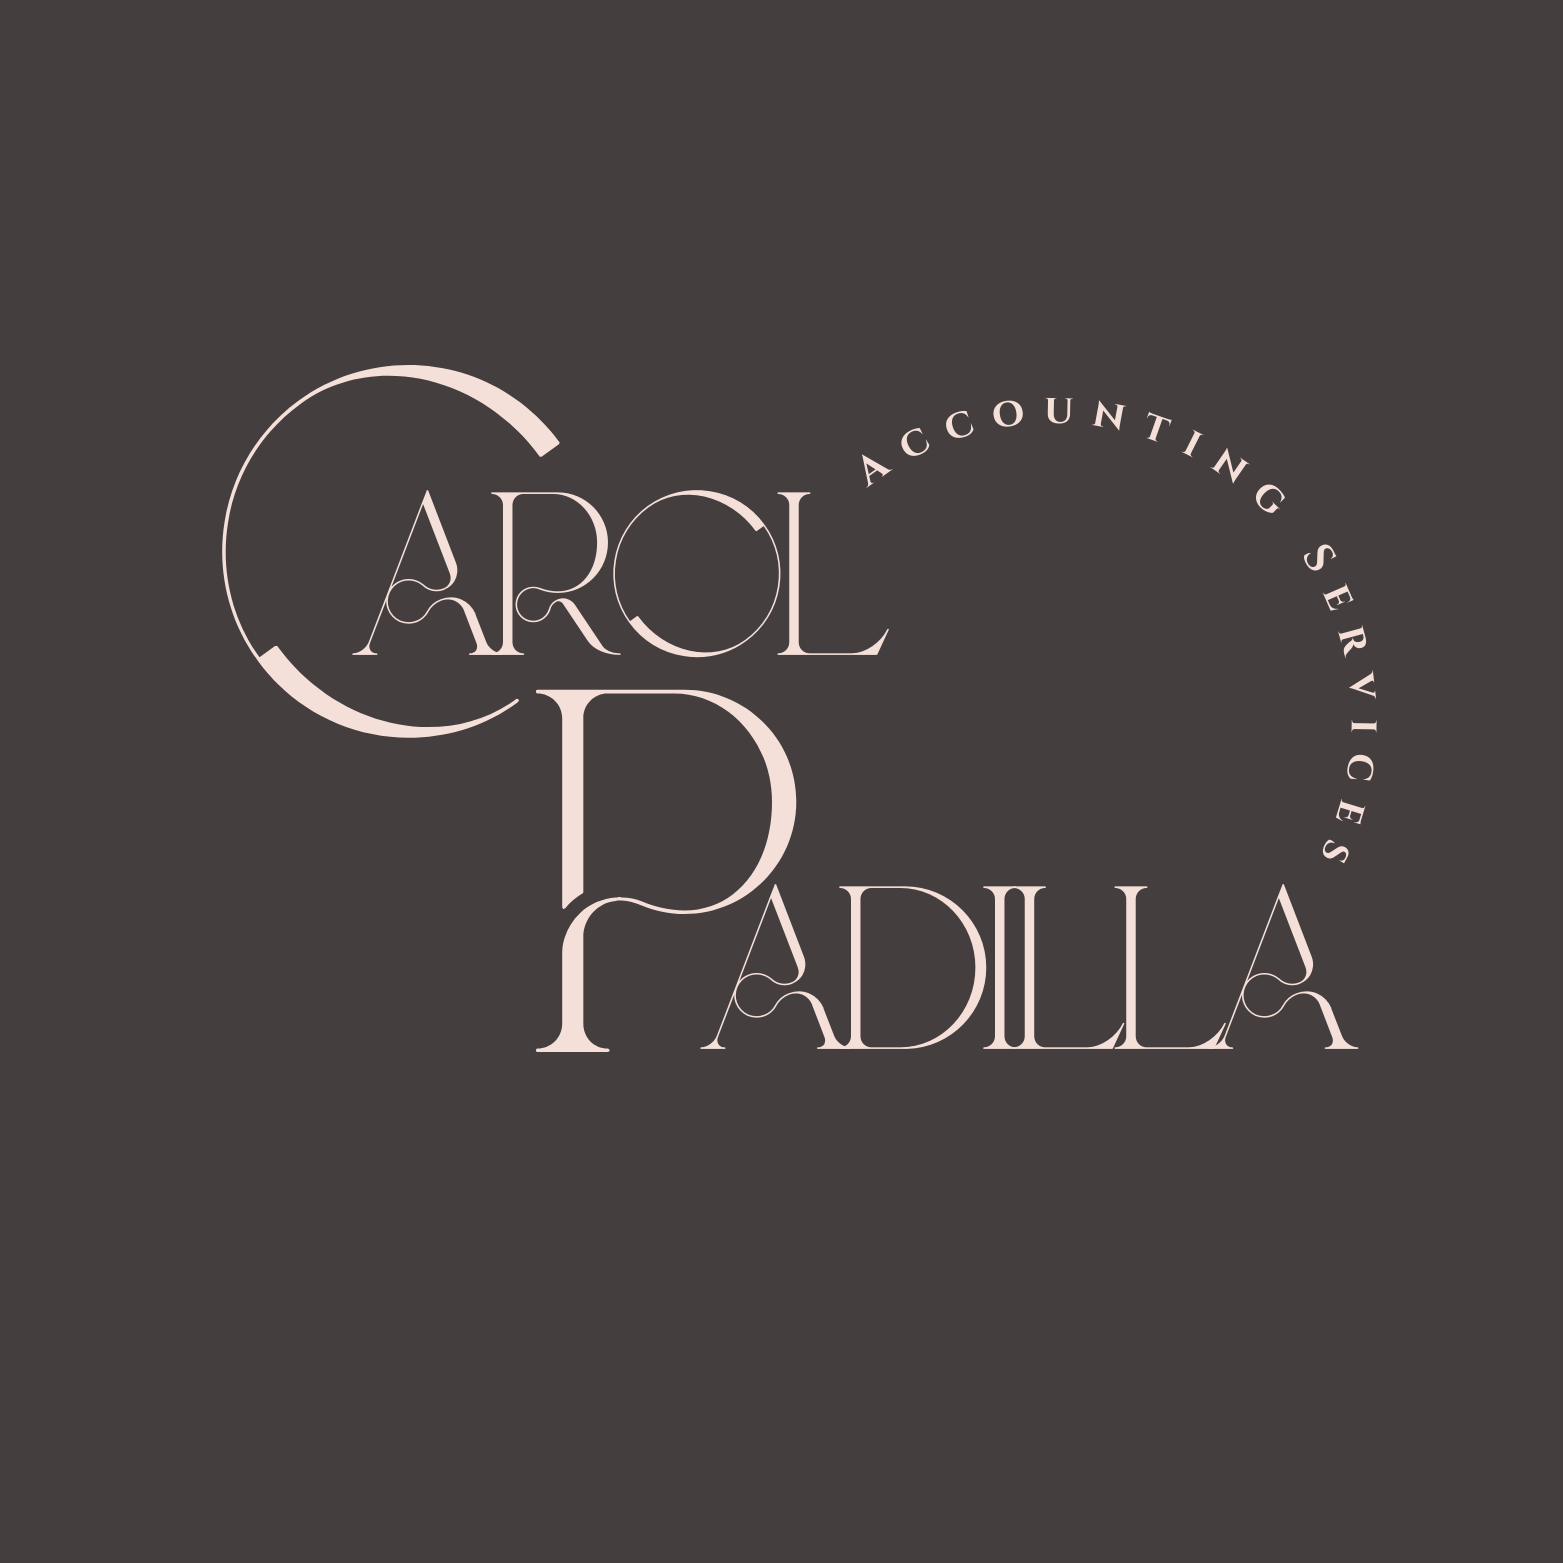 C Padilla Accounting Services